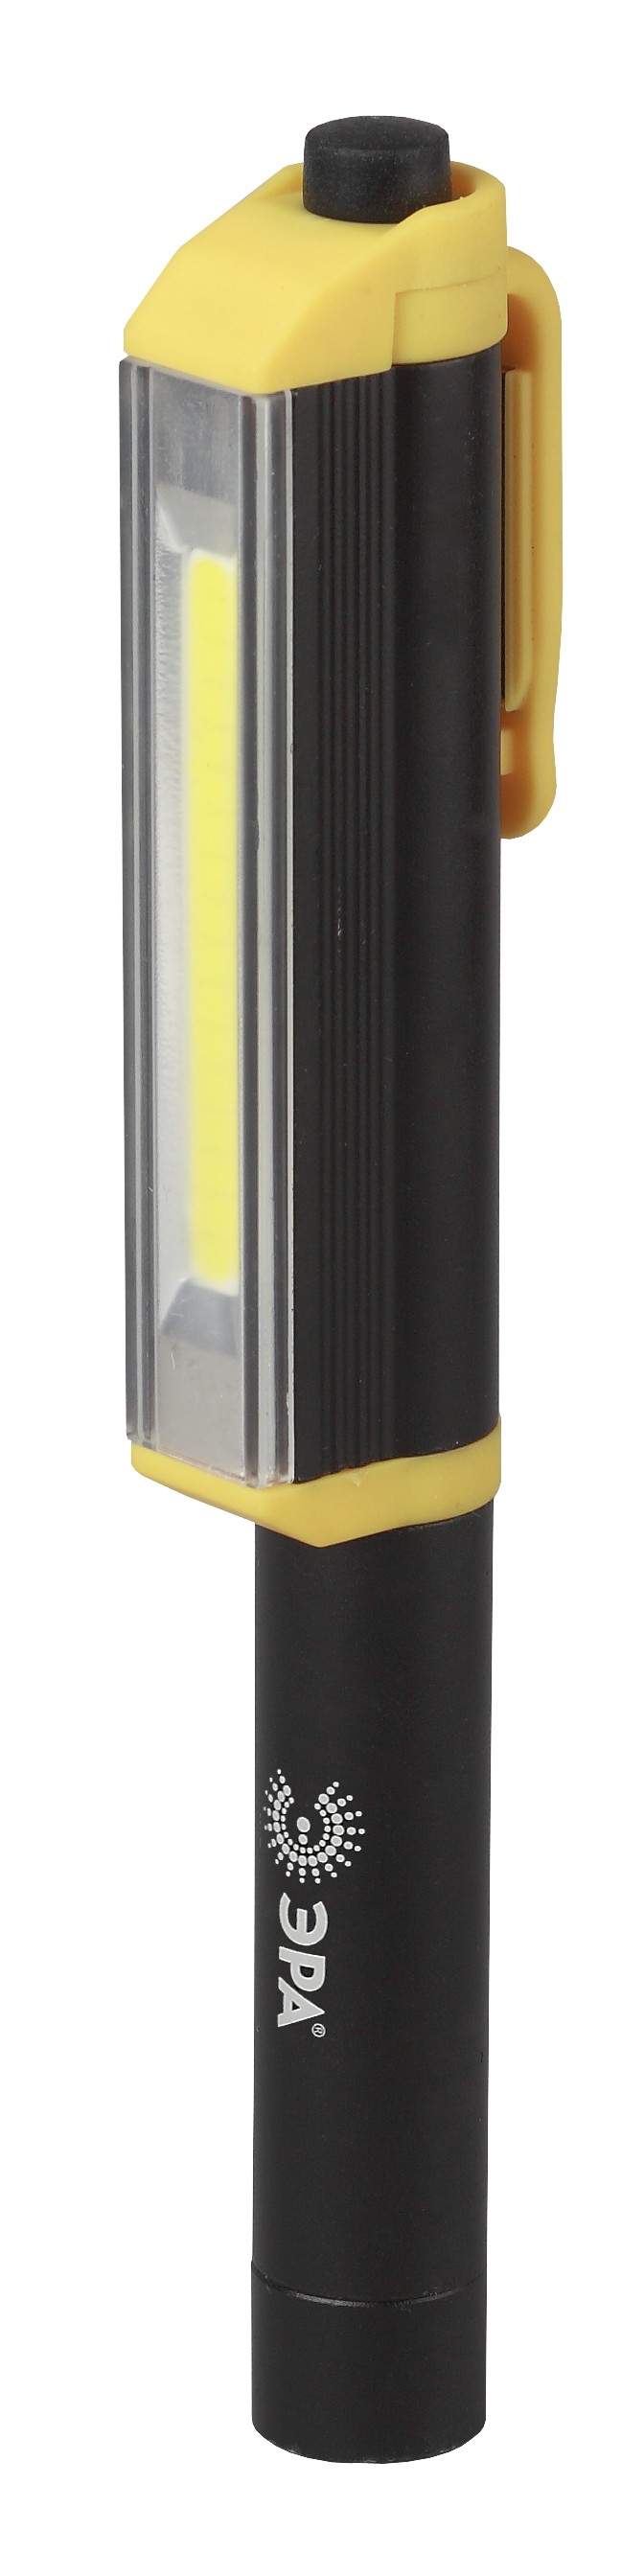 Светодиодный фонарь ЭРА Рабочие Практик RB-702 ручной на батарейках алюминиевый магнит крючок